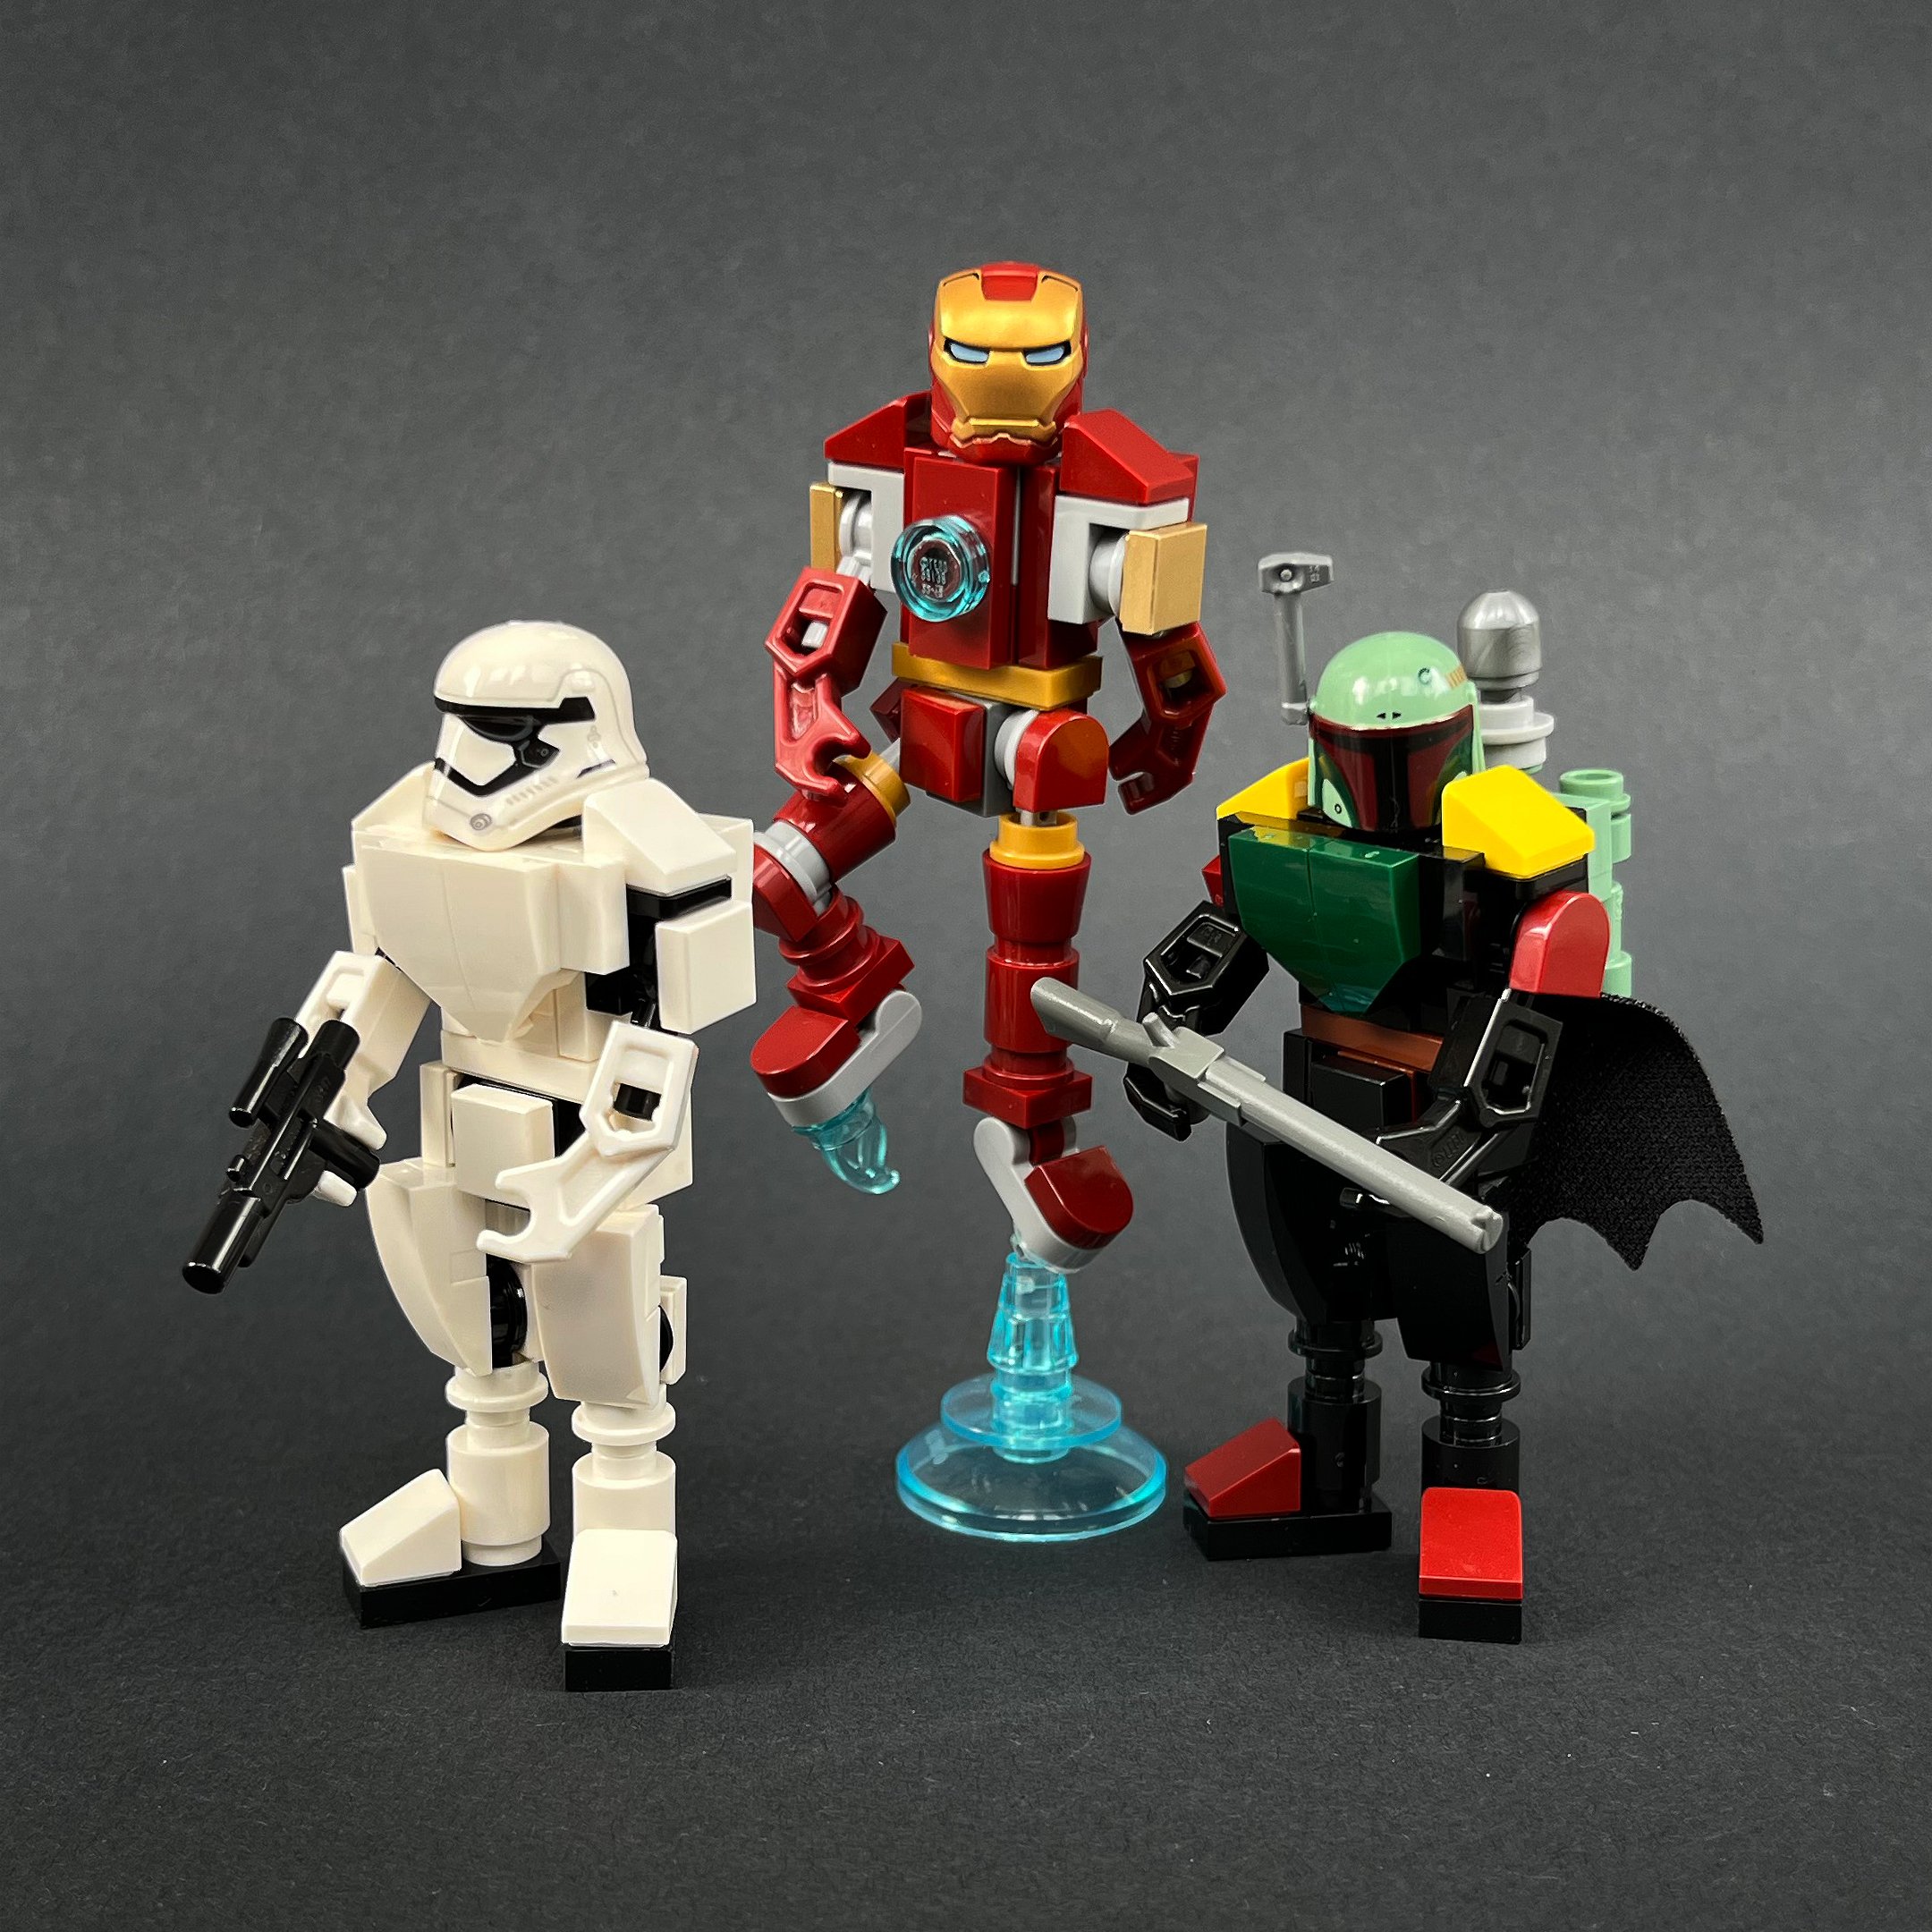 Damaged Suit Tony Stark Marvel Ironman Lego Moc Minifigure 